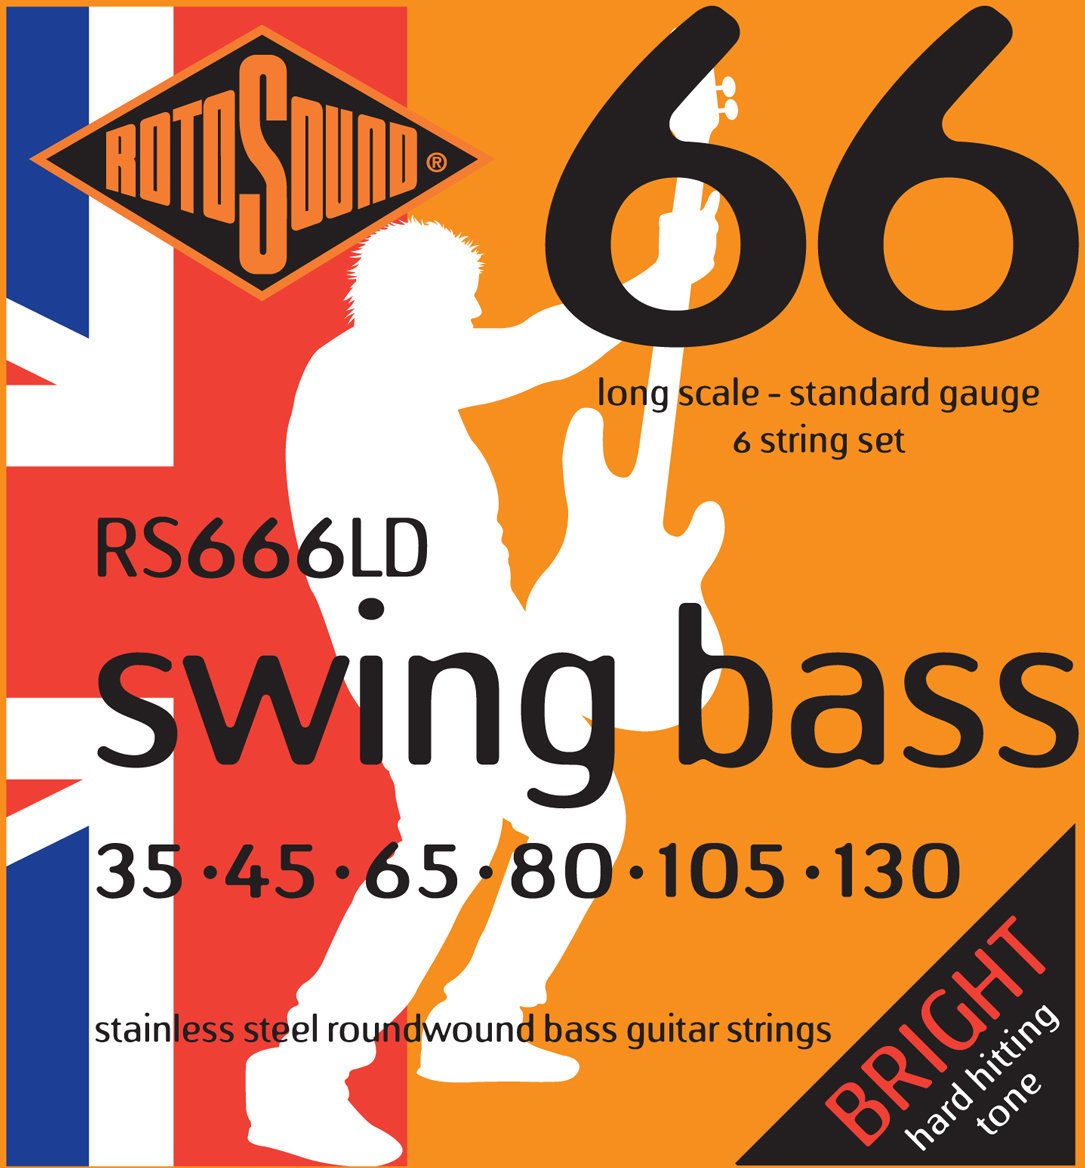 Struny do gitary basowej6-strunowej Rotosound RS 666 LD